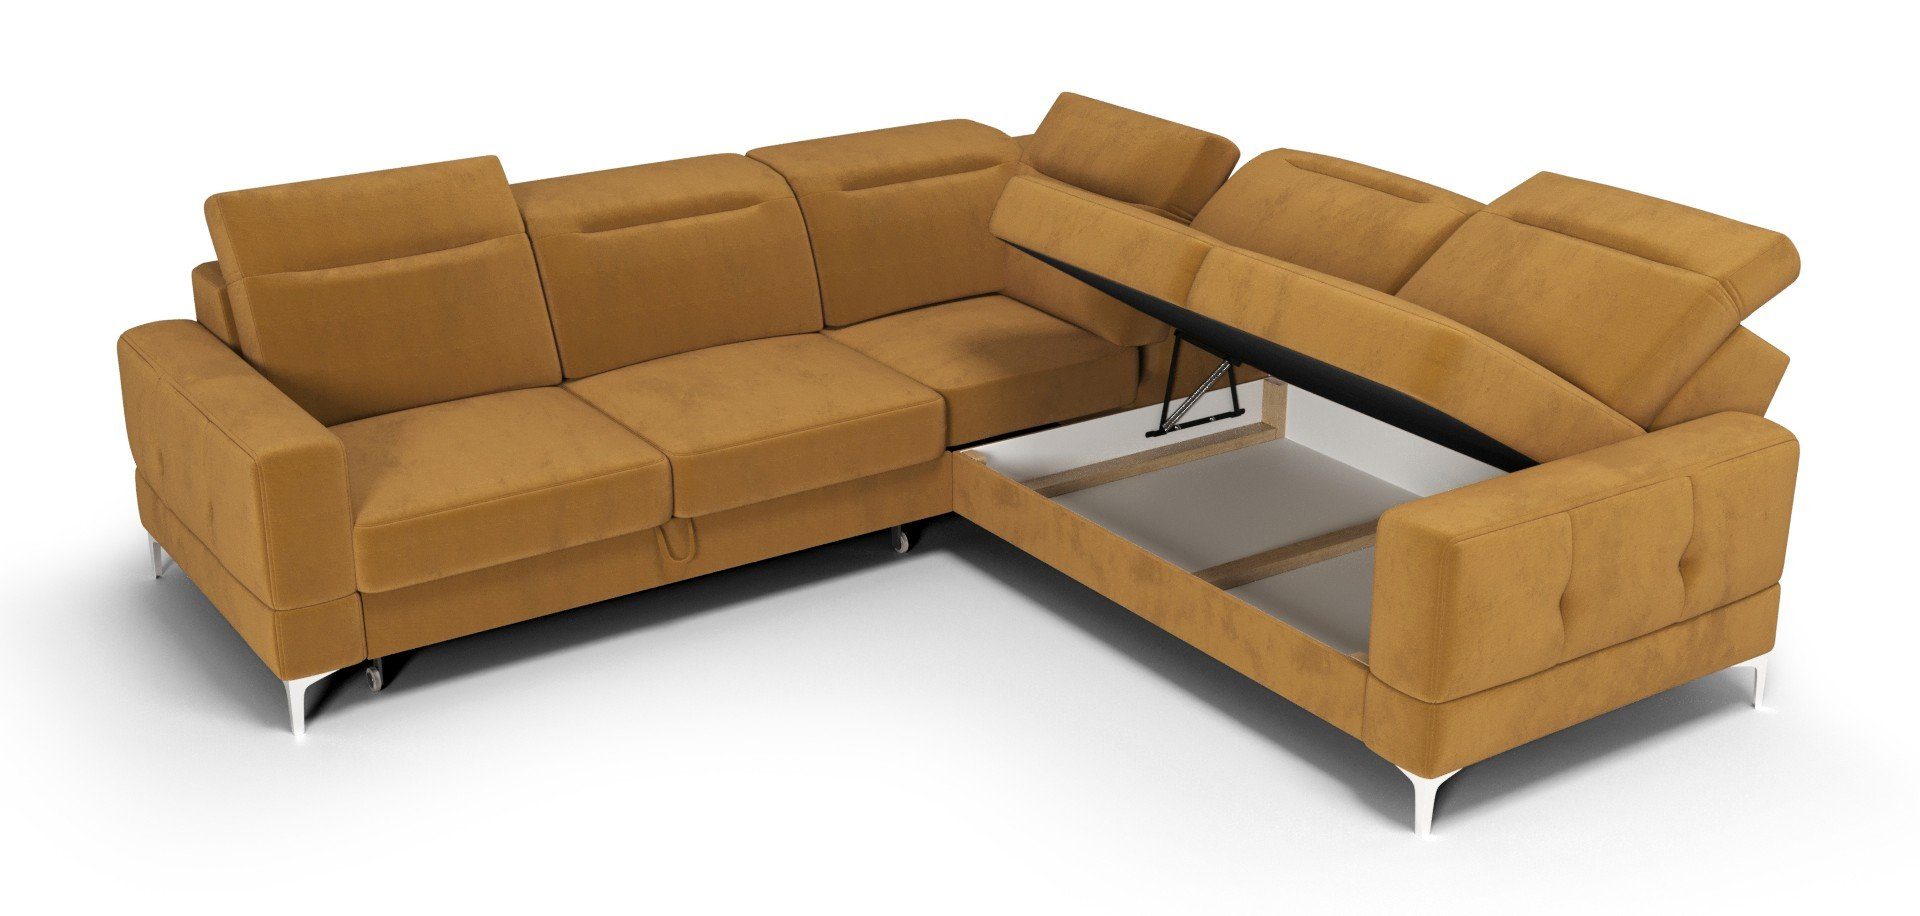 Möbel für mit Farbauswahl mit Dich 20 Stoff- Ecksofa Element Max, Schlaffunktion, Bettkasten, und grün Malibu Veloursstoff